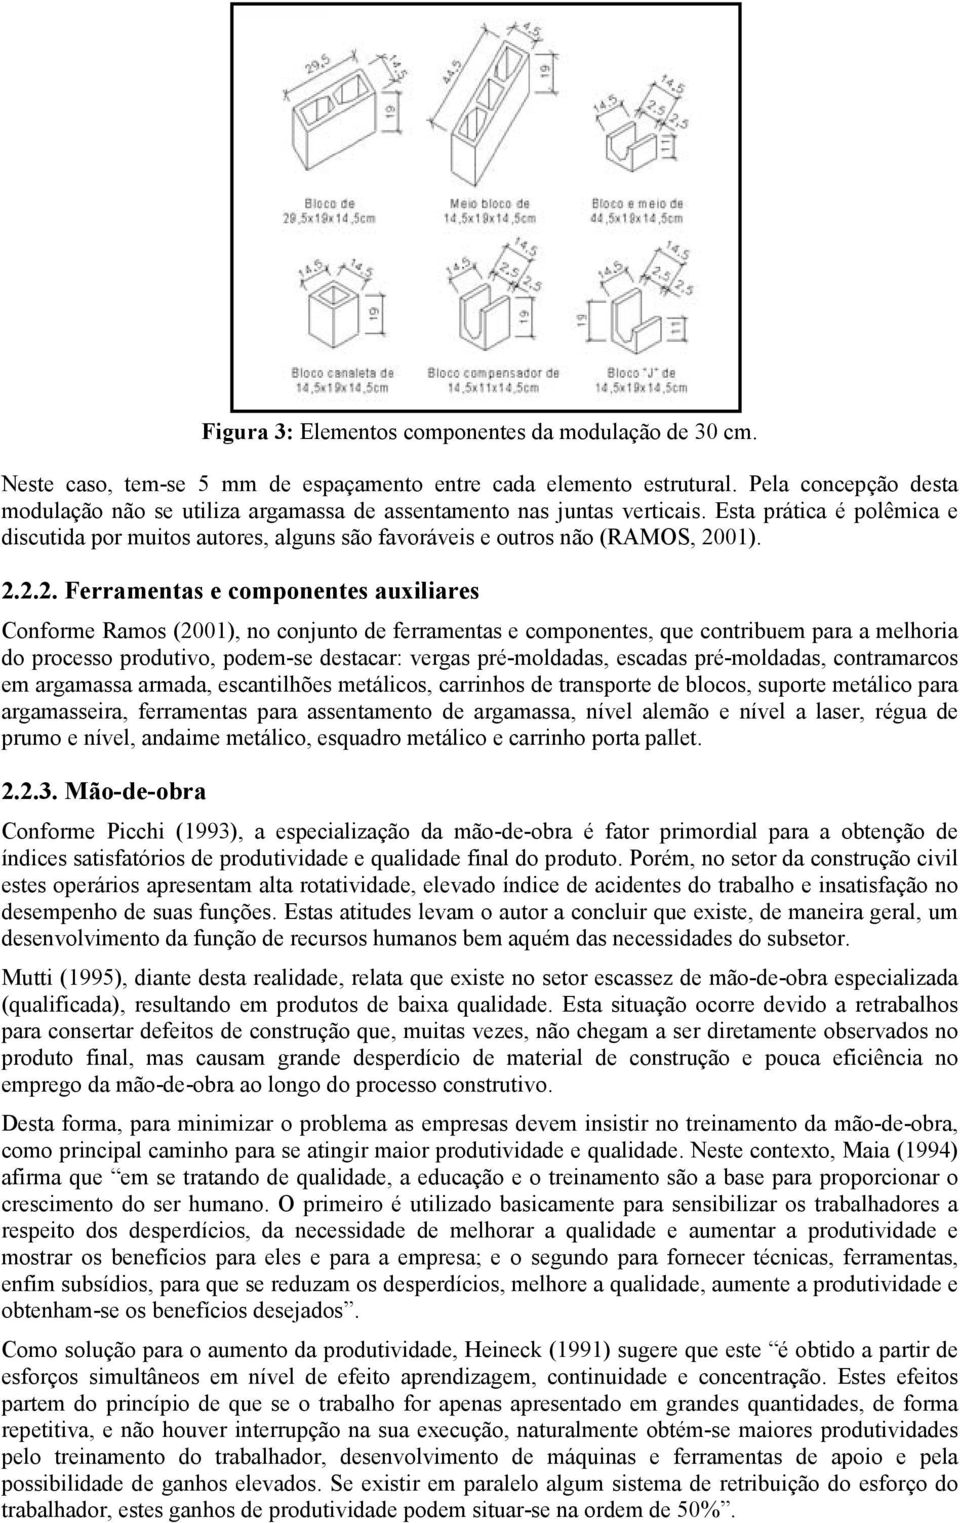 2.2.2. Ferramentas e componentes auxiliares Conforme Ramos (2001), no conjunto de ferramentas e componentes, que contribuem para a melhoria do processo produtivo, podem-se destacar: vergas